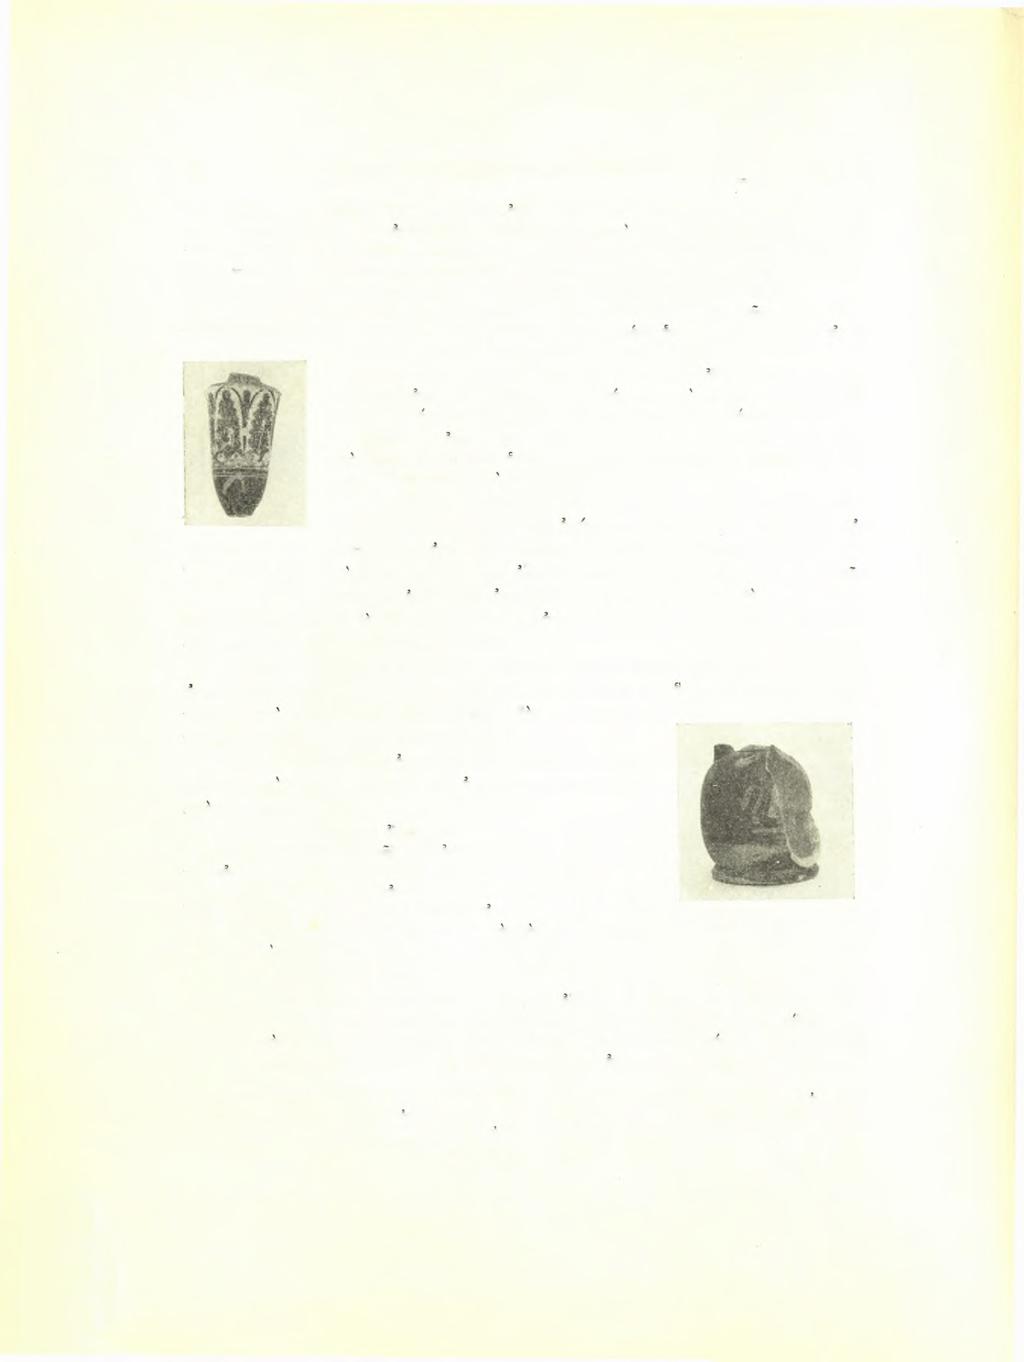 76 Σεραφείμ Ί. Χαριτωνίδβυ ΑΕ 19Β8 τοϋ ζωγράφου τοΰ Beldam (χαρακτηριστικά! εγχάρακτοι περιθέουσαι γραμμαί, πρβλ. σ. 22-23).